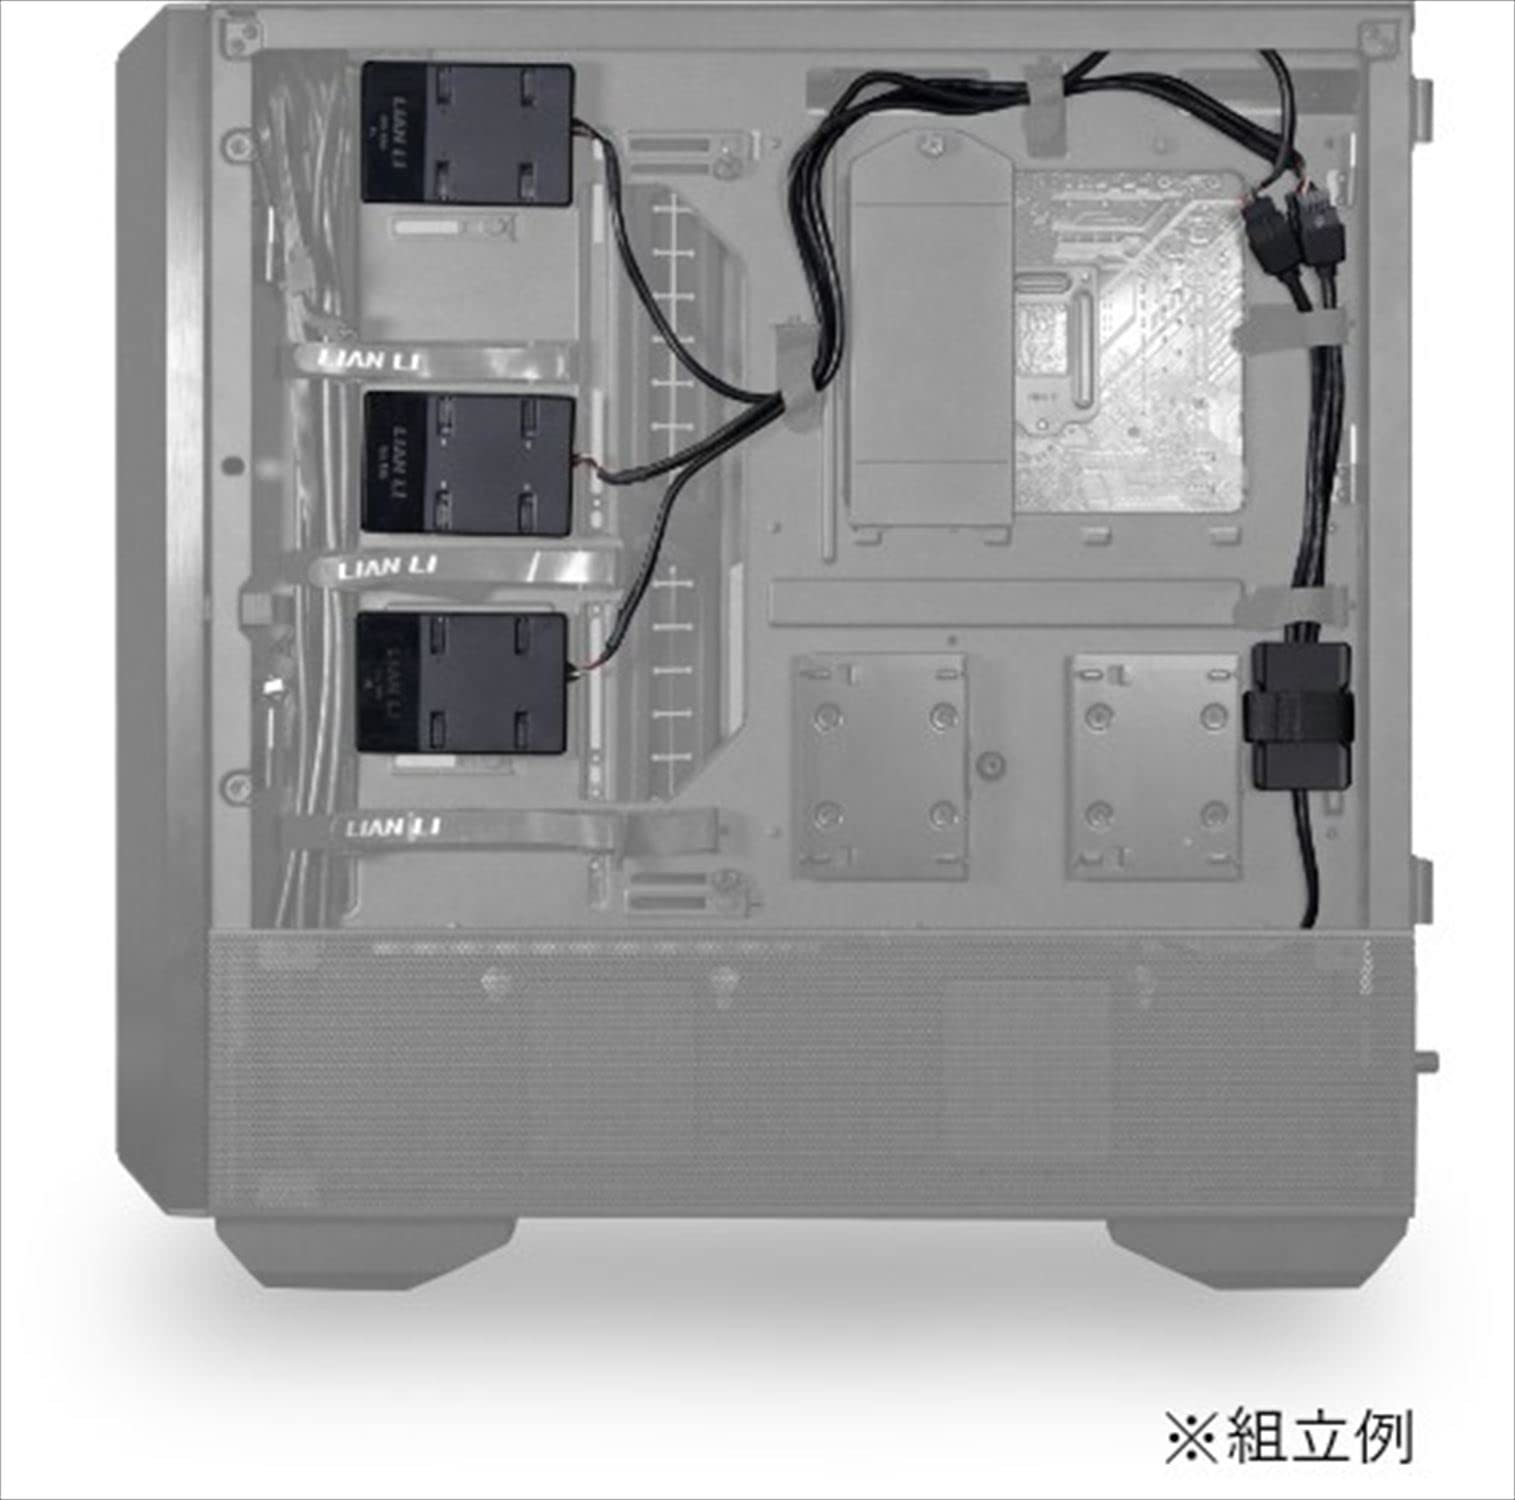 リアンリー(Li LIAN LI) Lianli USB 2.0 Hub, USB 2.0, 1 to 3 HUB, Supports UNI Fan Series Controller, USB 2.0, 9 Pin, 3 Port Extension, Japanese Authorized Dealer Product